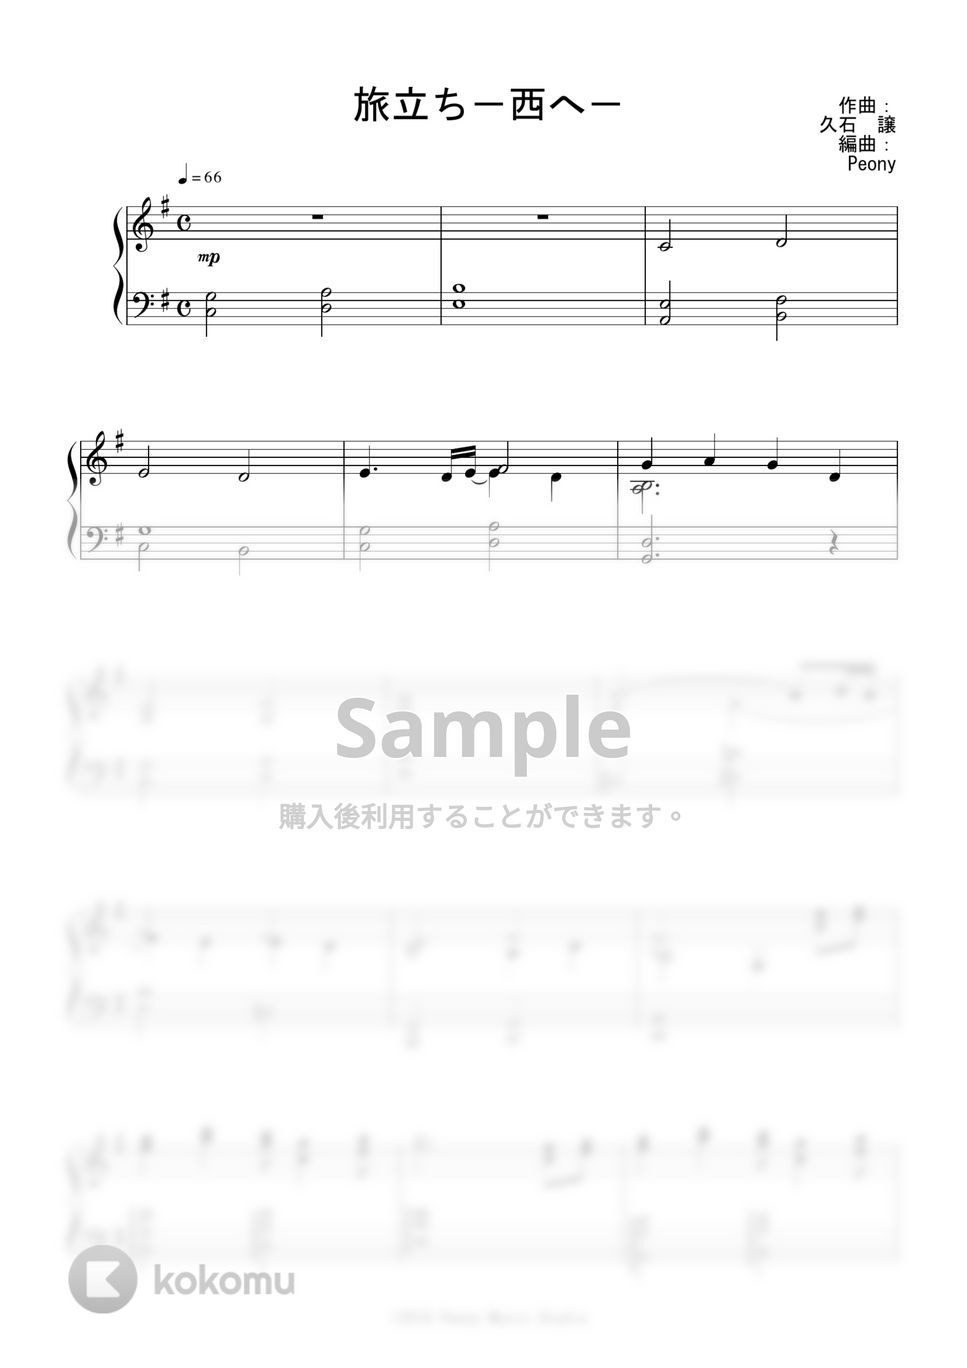 ジブリ映画『もののけ姫』OST - 旅立ち-西へ- by Peony